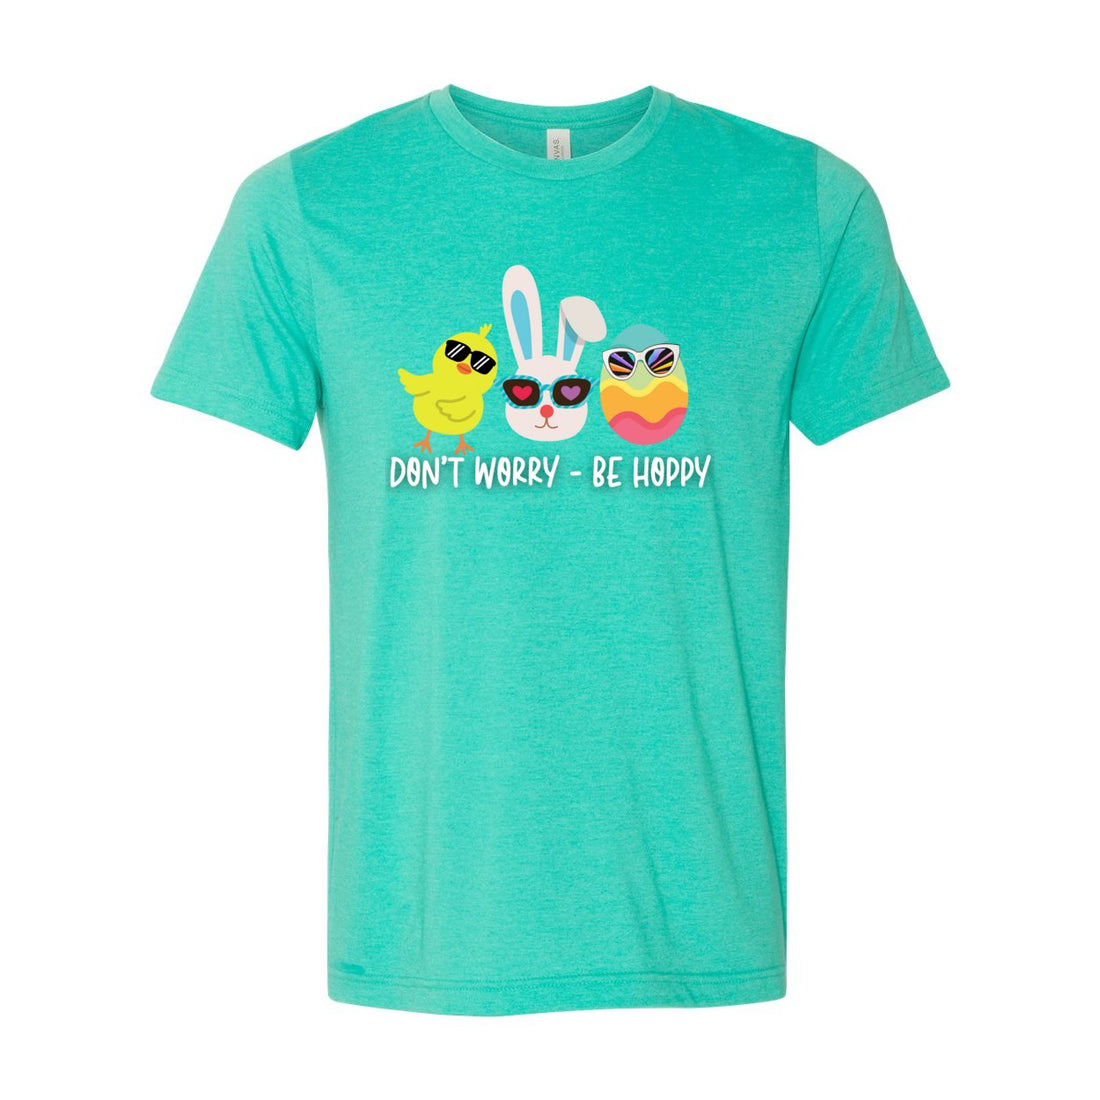 Be Hoppy Tee - T-Shirts - Positively Sassy - Be Hoppy Tee